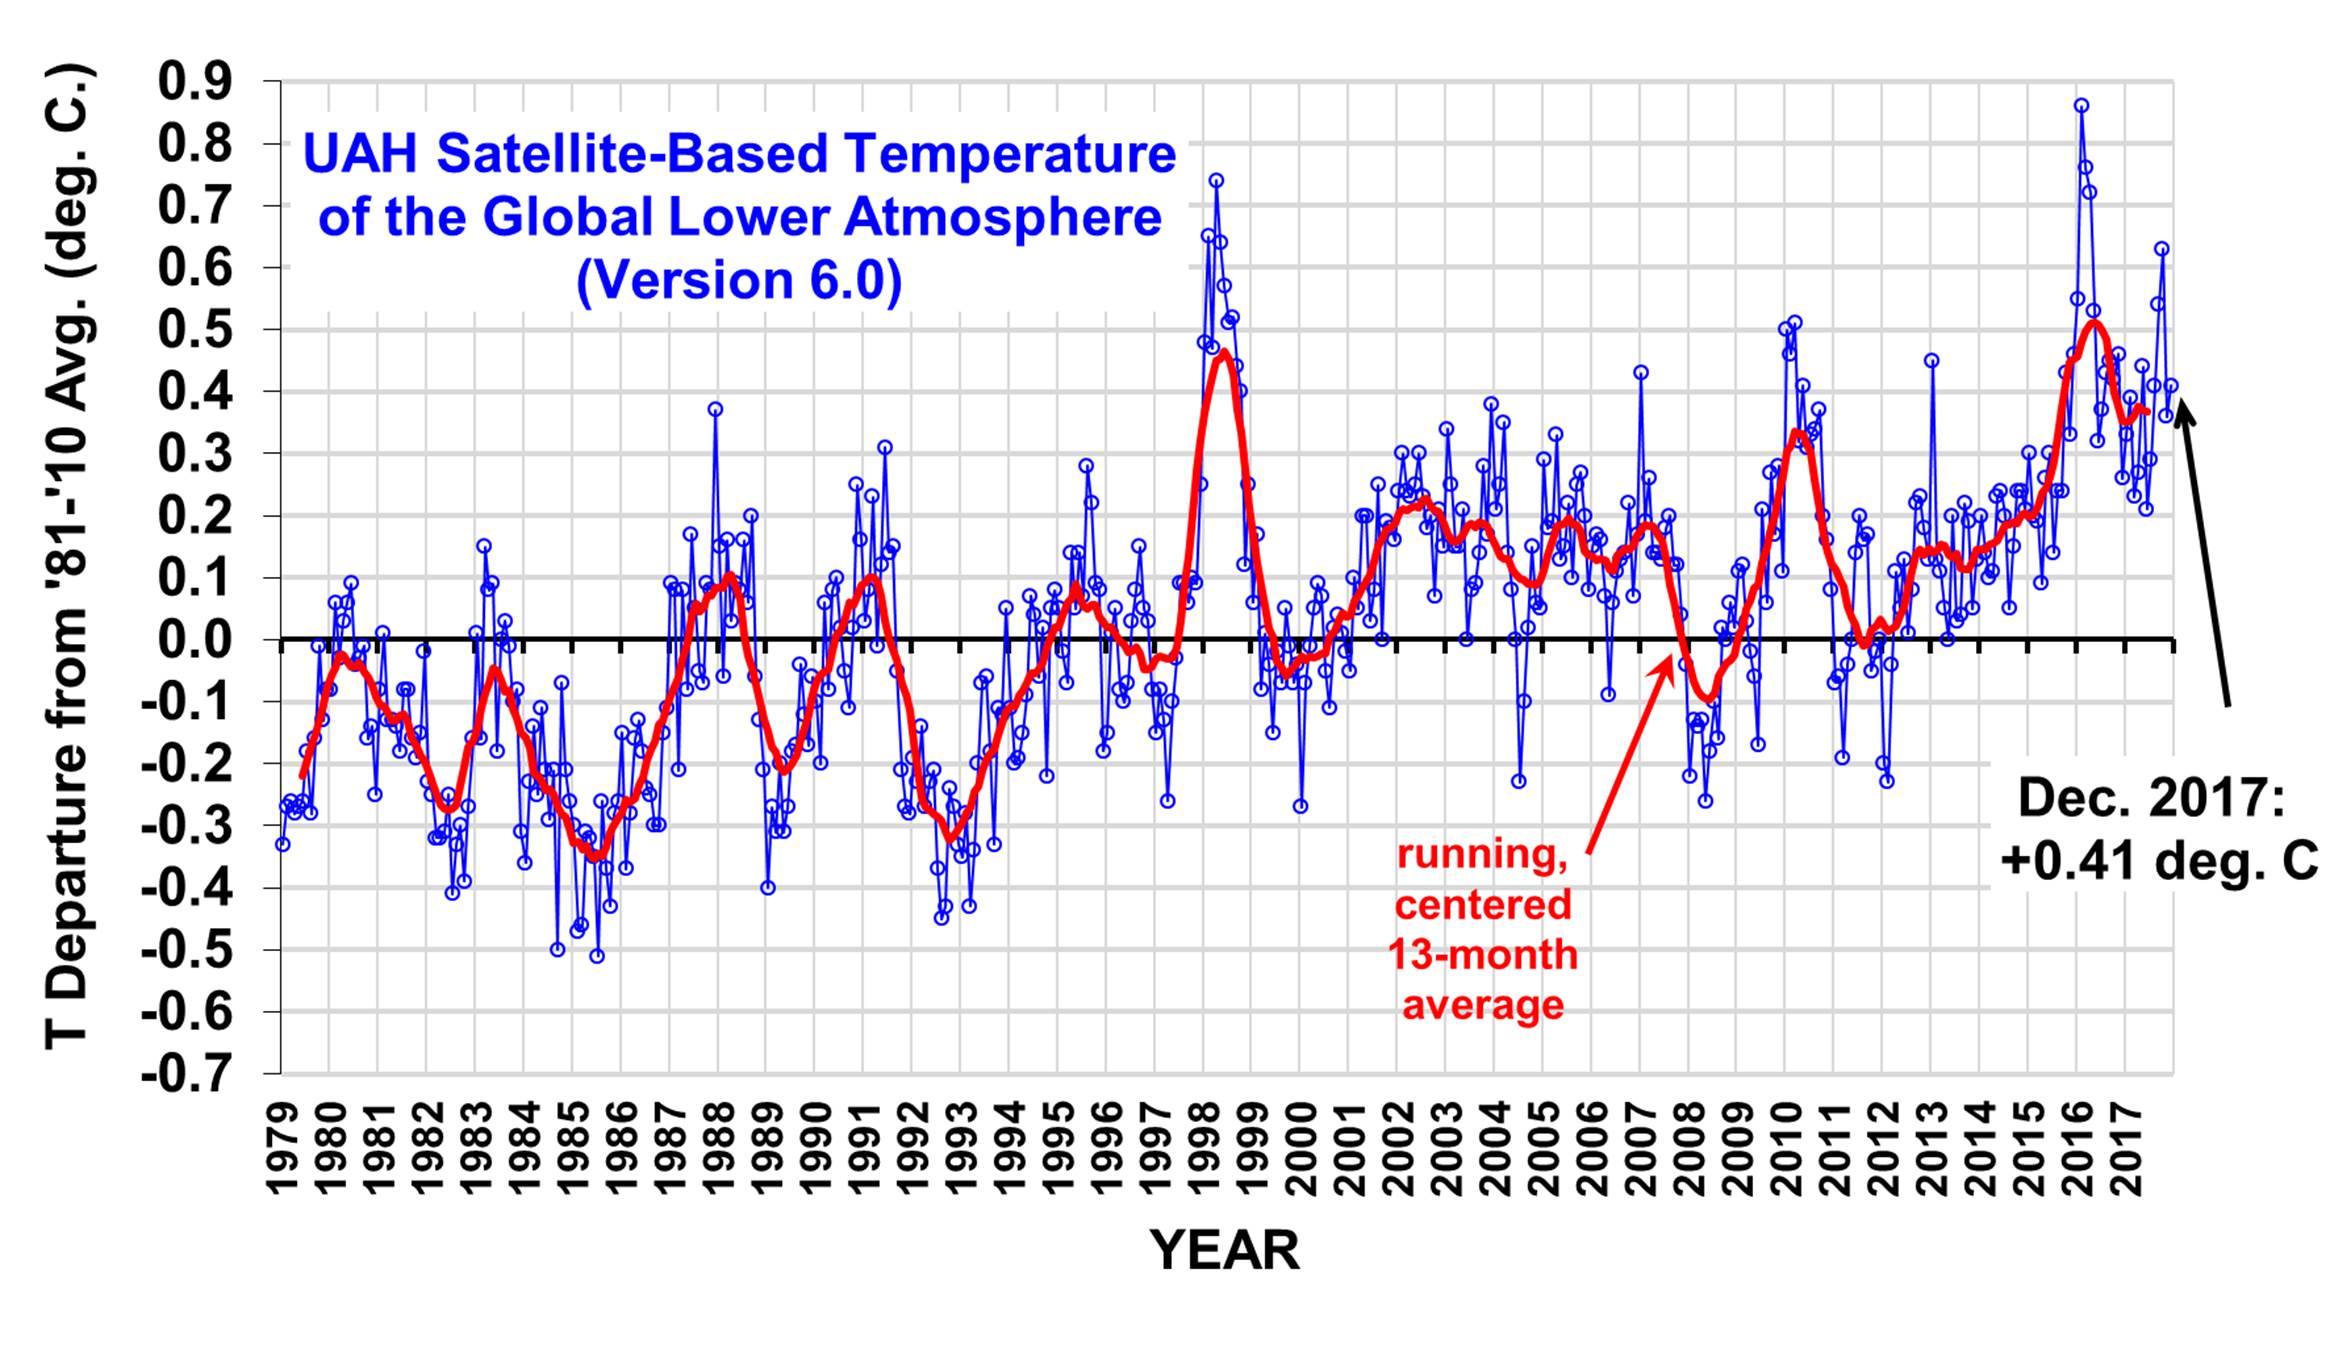 Temperature globali da satellite UAH in sostanziale stabilità